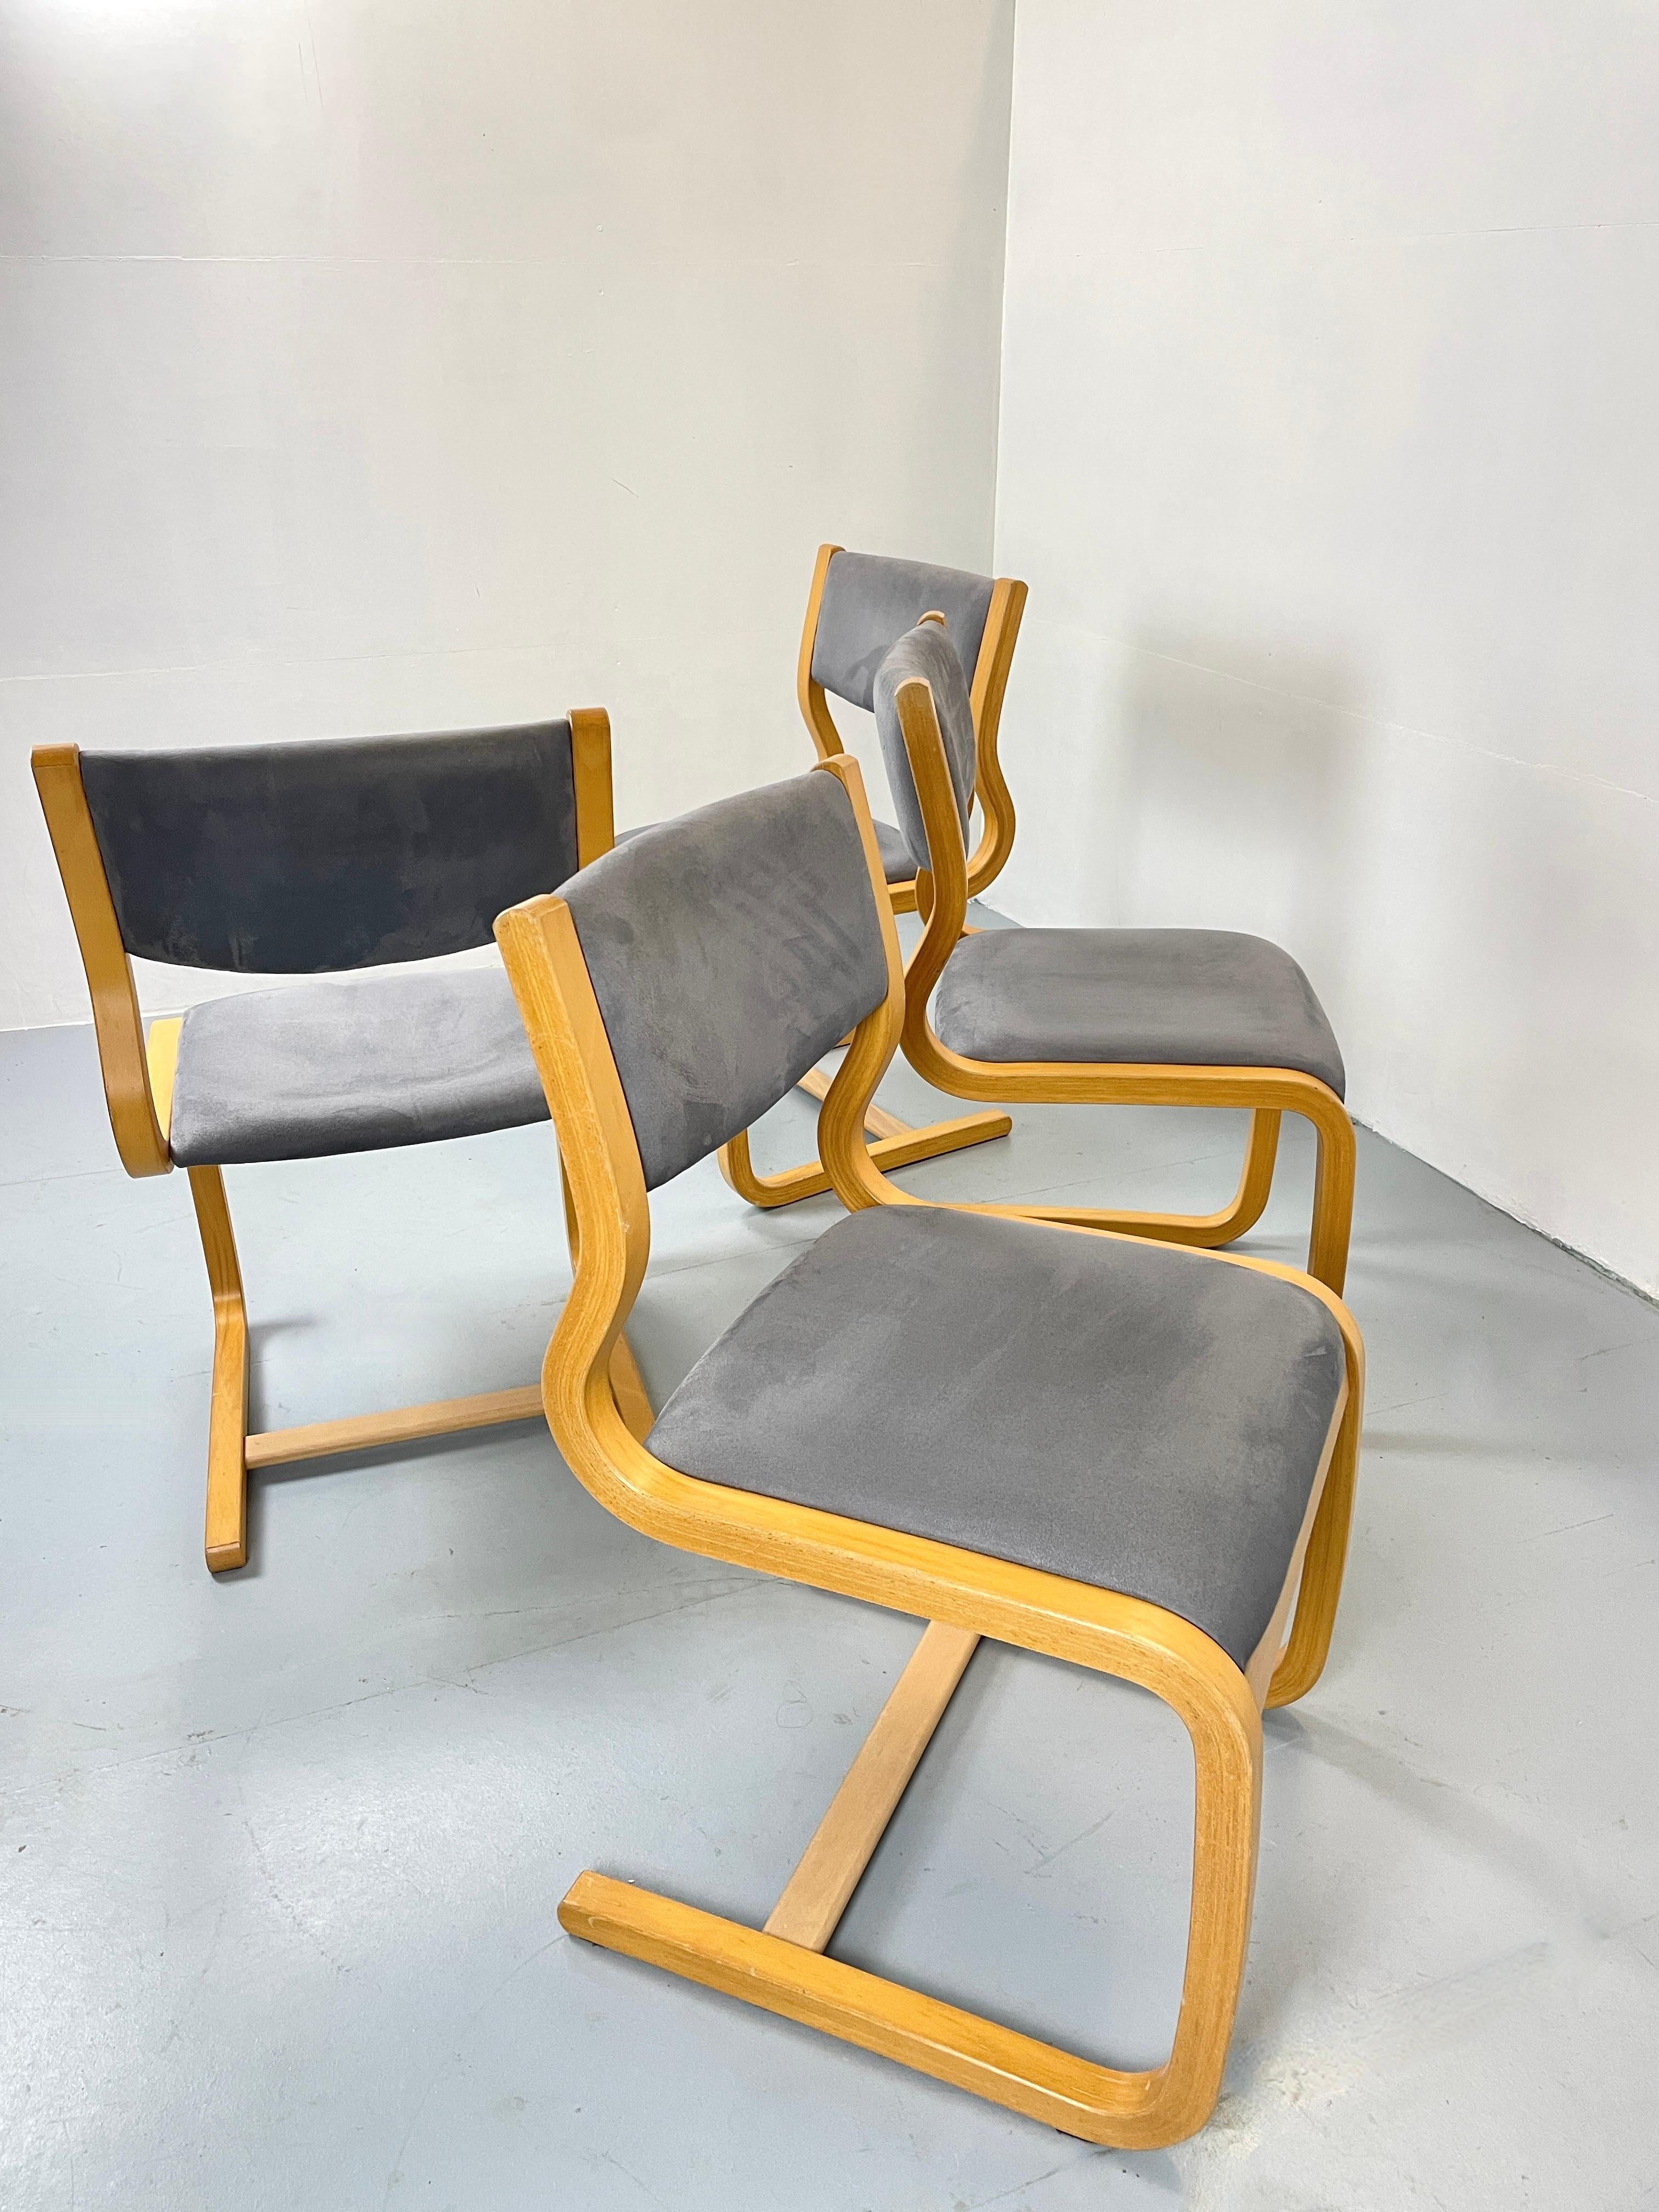 Jolies chaises cantilever scanidaviennes vintage.
Probablement fabriqué au Danemark. Design/One en bois de hêtre stratifié courbé.
revêtement gris. 

Il s'agit d'un ensemble de quatre chaises